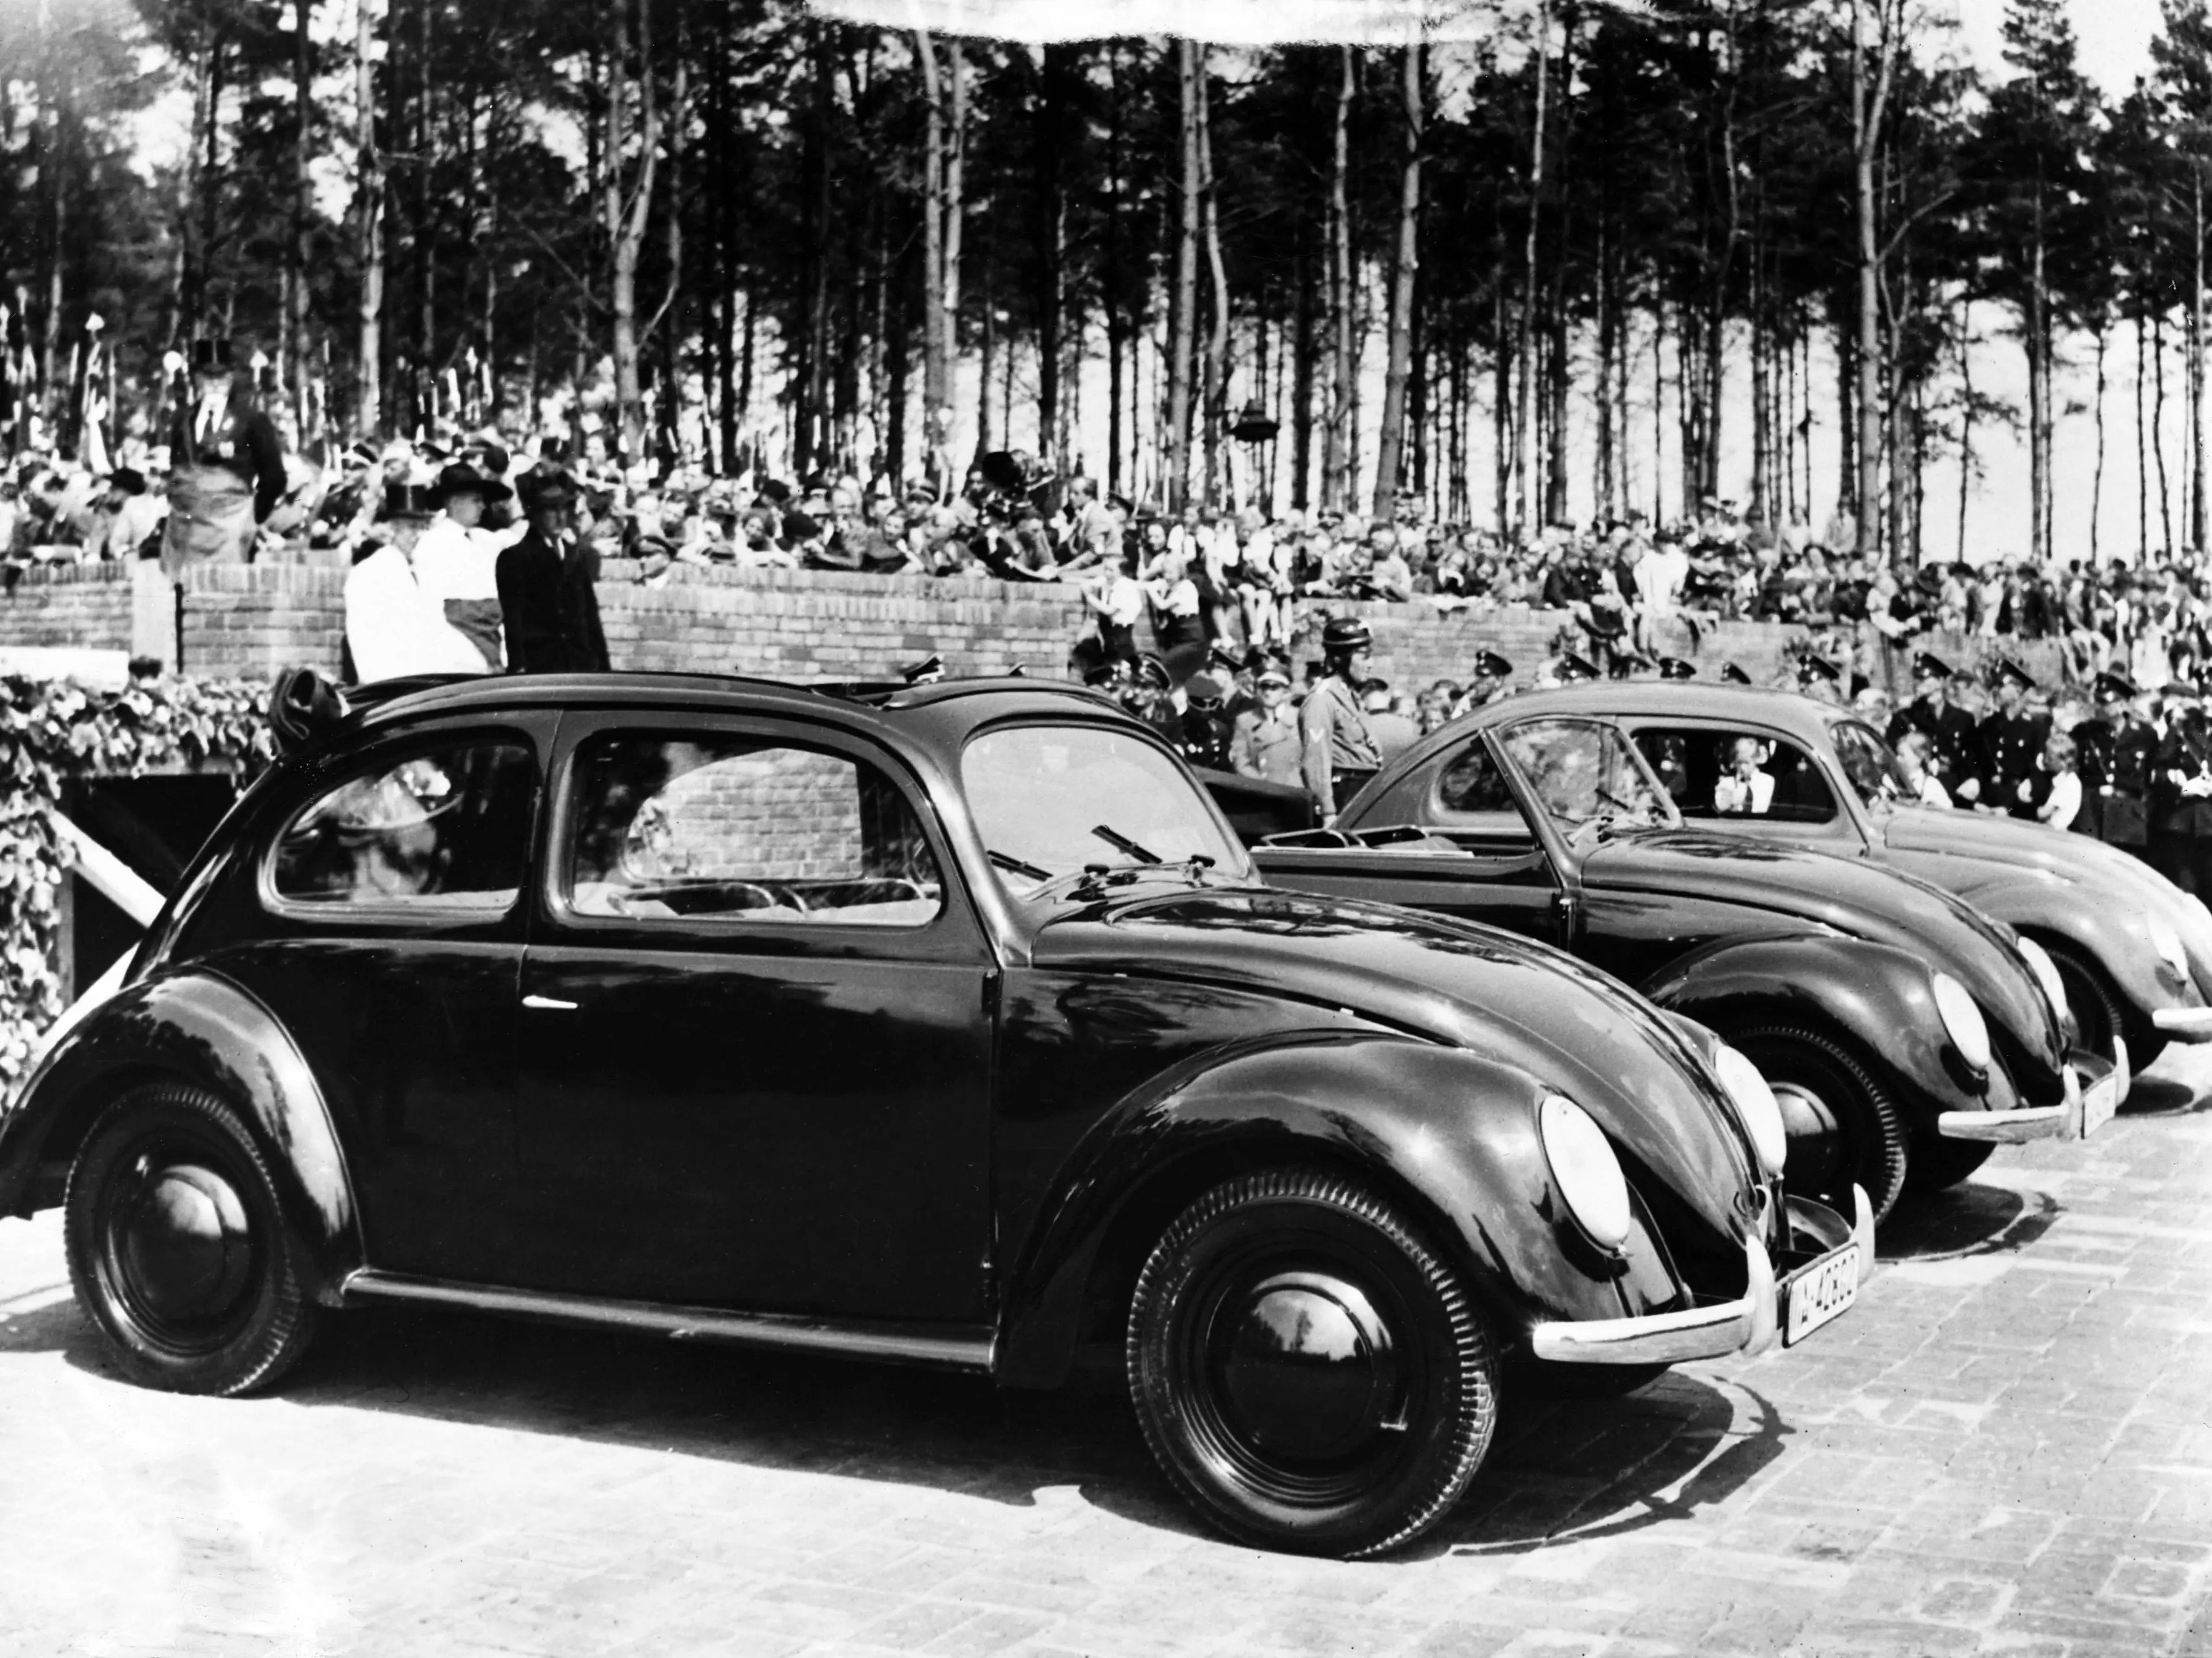 Adolf Hitler está de pie detrás de los coches con un abrigo oscuro, preparándose para inaugurar la nueva fábrica de Volkswagen en Fallersleben.